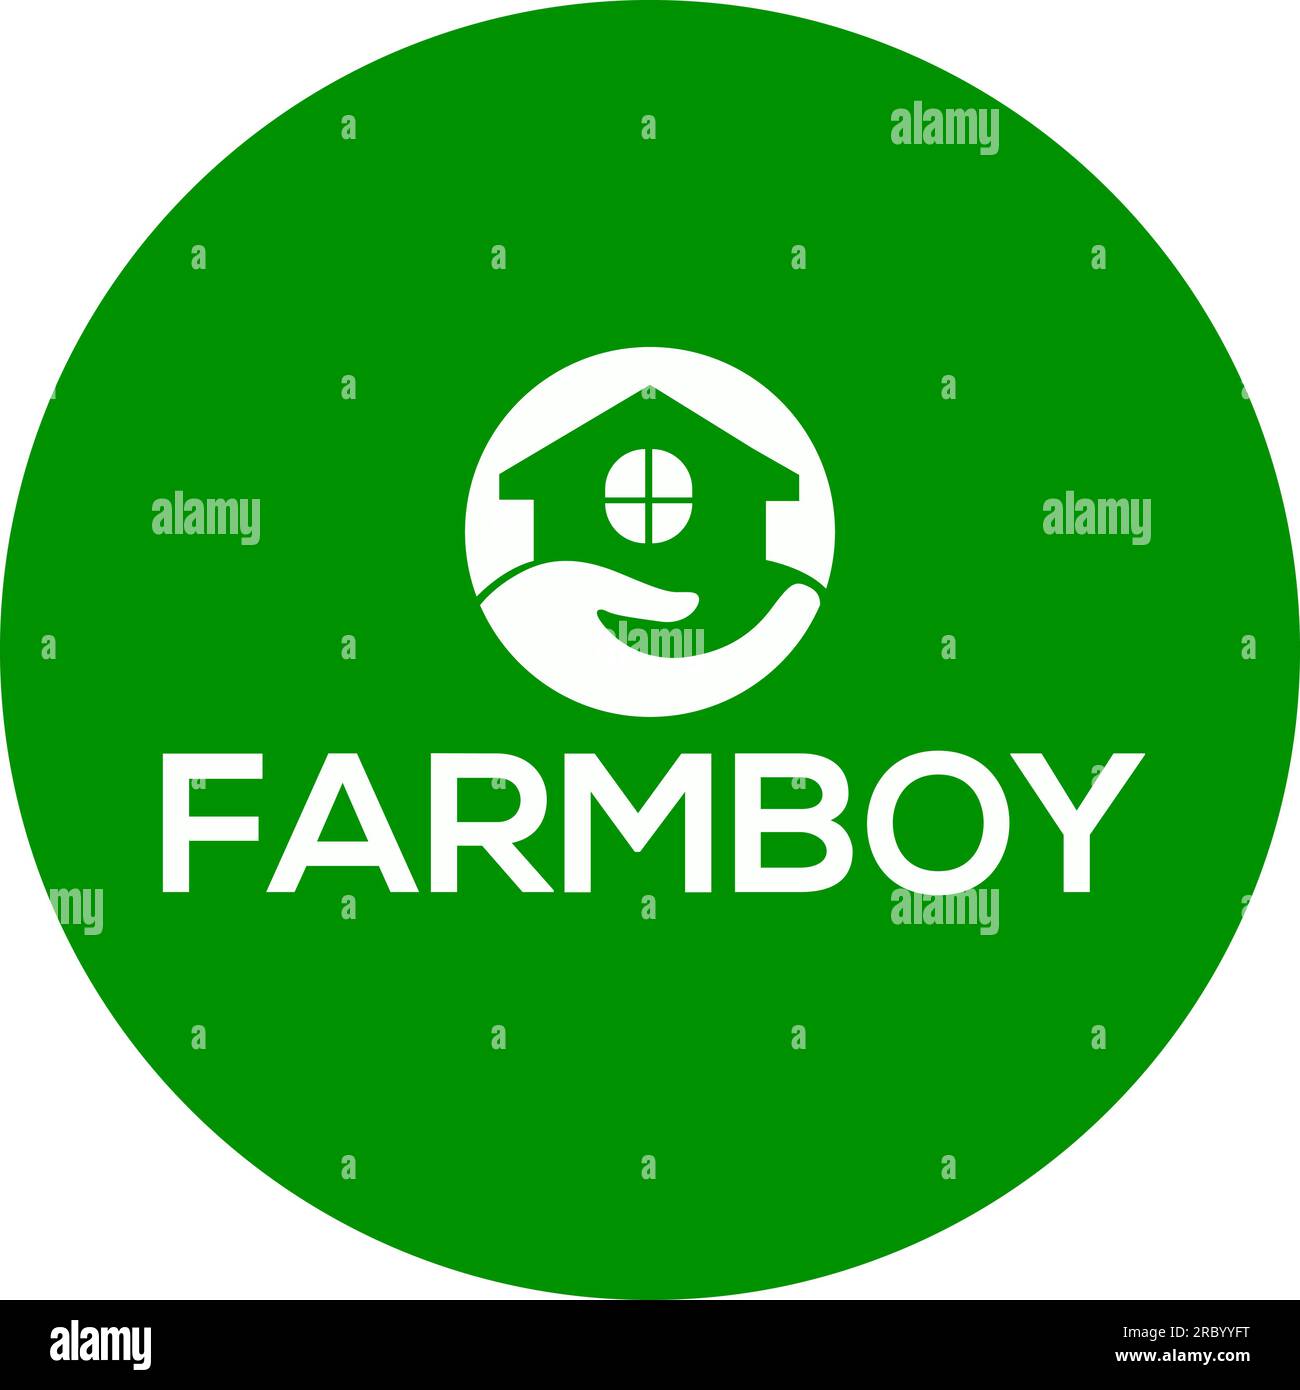 Farmboy vector logo or icon, green background farmboy logo Stock Vector